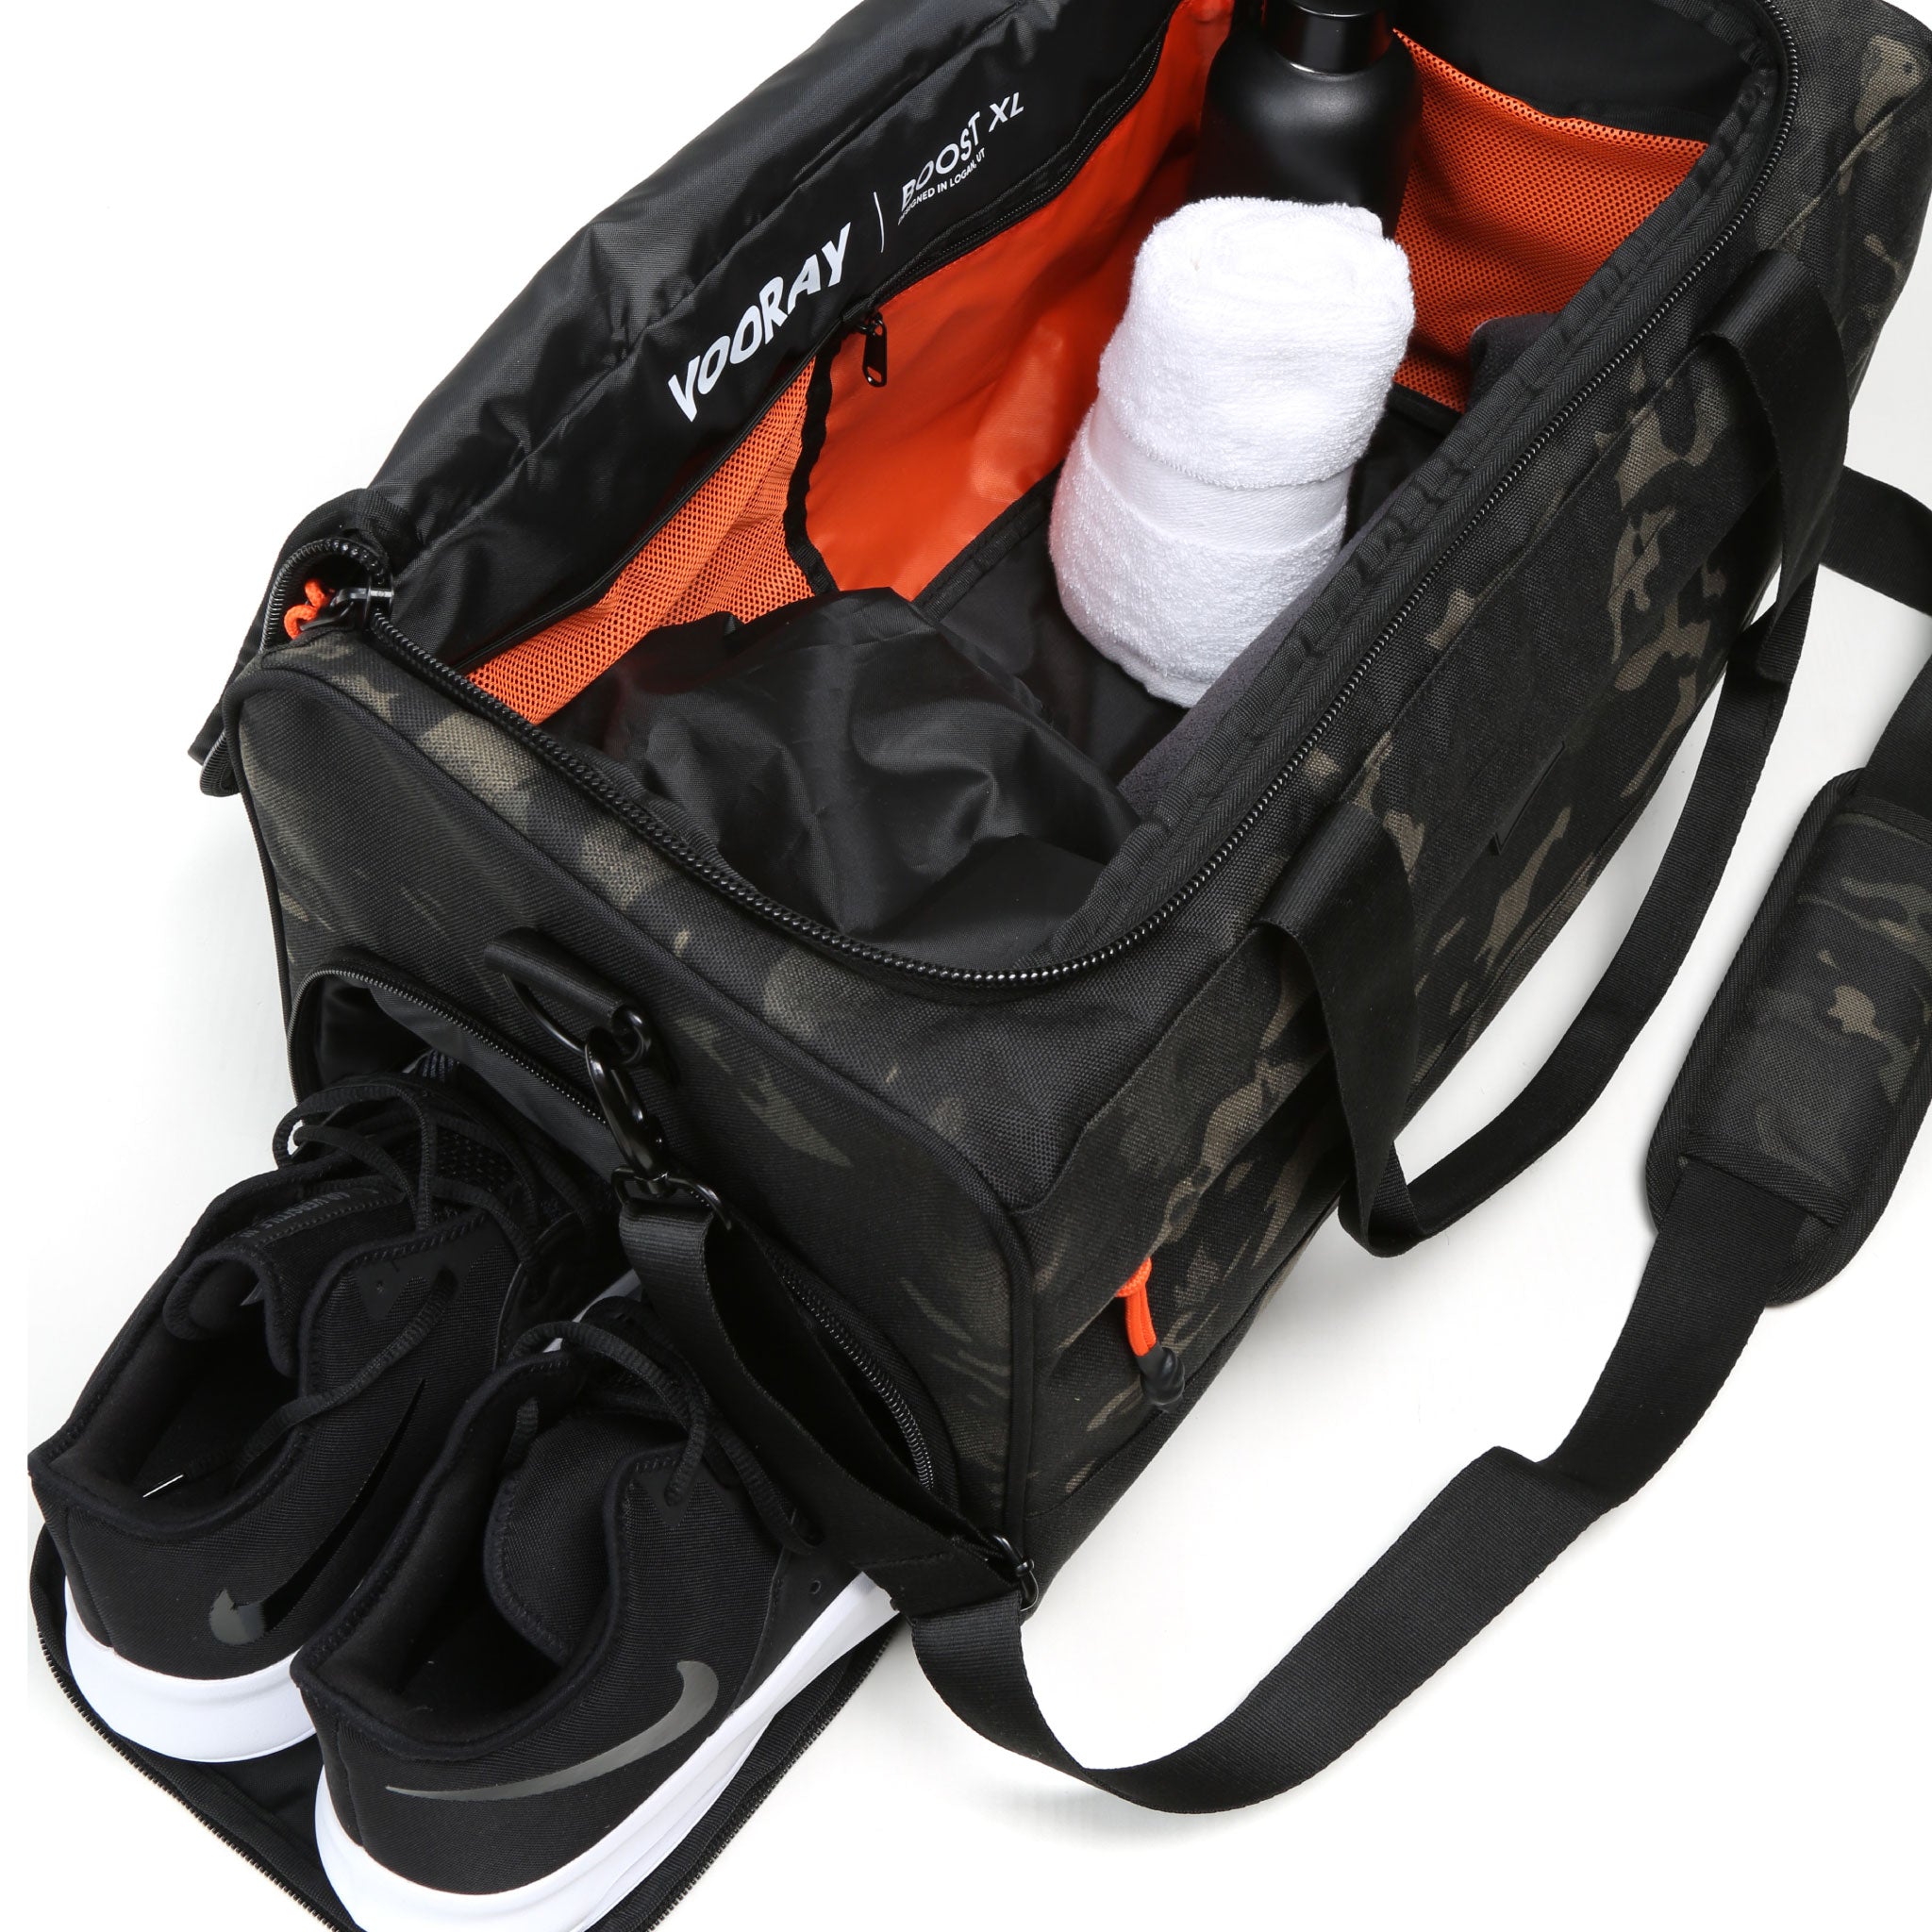 Vooray Boost Duffel 22L - 43.2 cm - 22L - Große wasserdichte Sporttasche mit Schuhfach, Zubehörtaschen, Premium Wochenende Reisetasche, strapazierfähige Sporttasche (Abstract Camo)